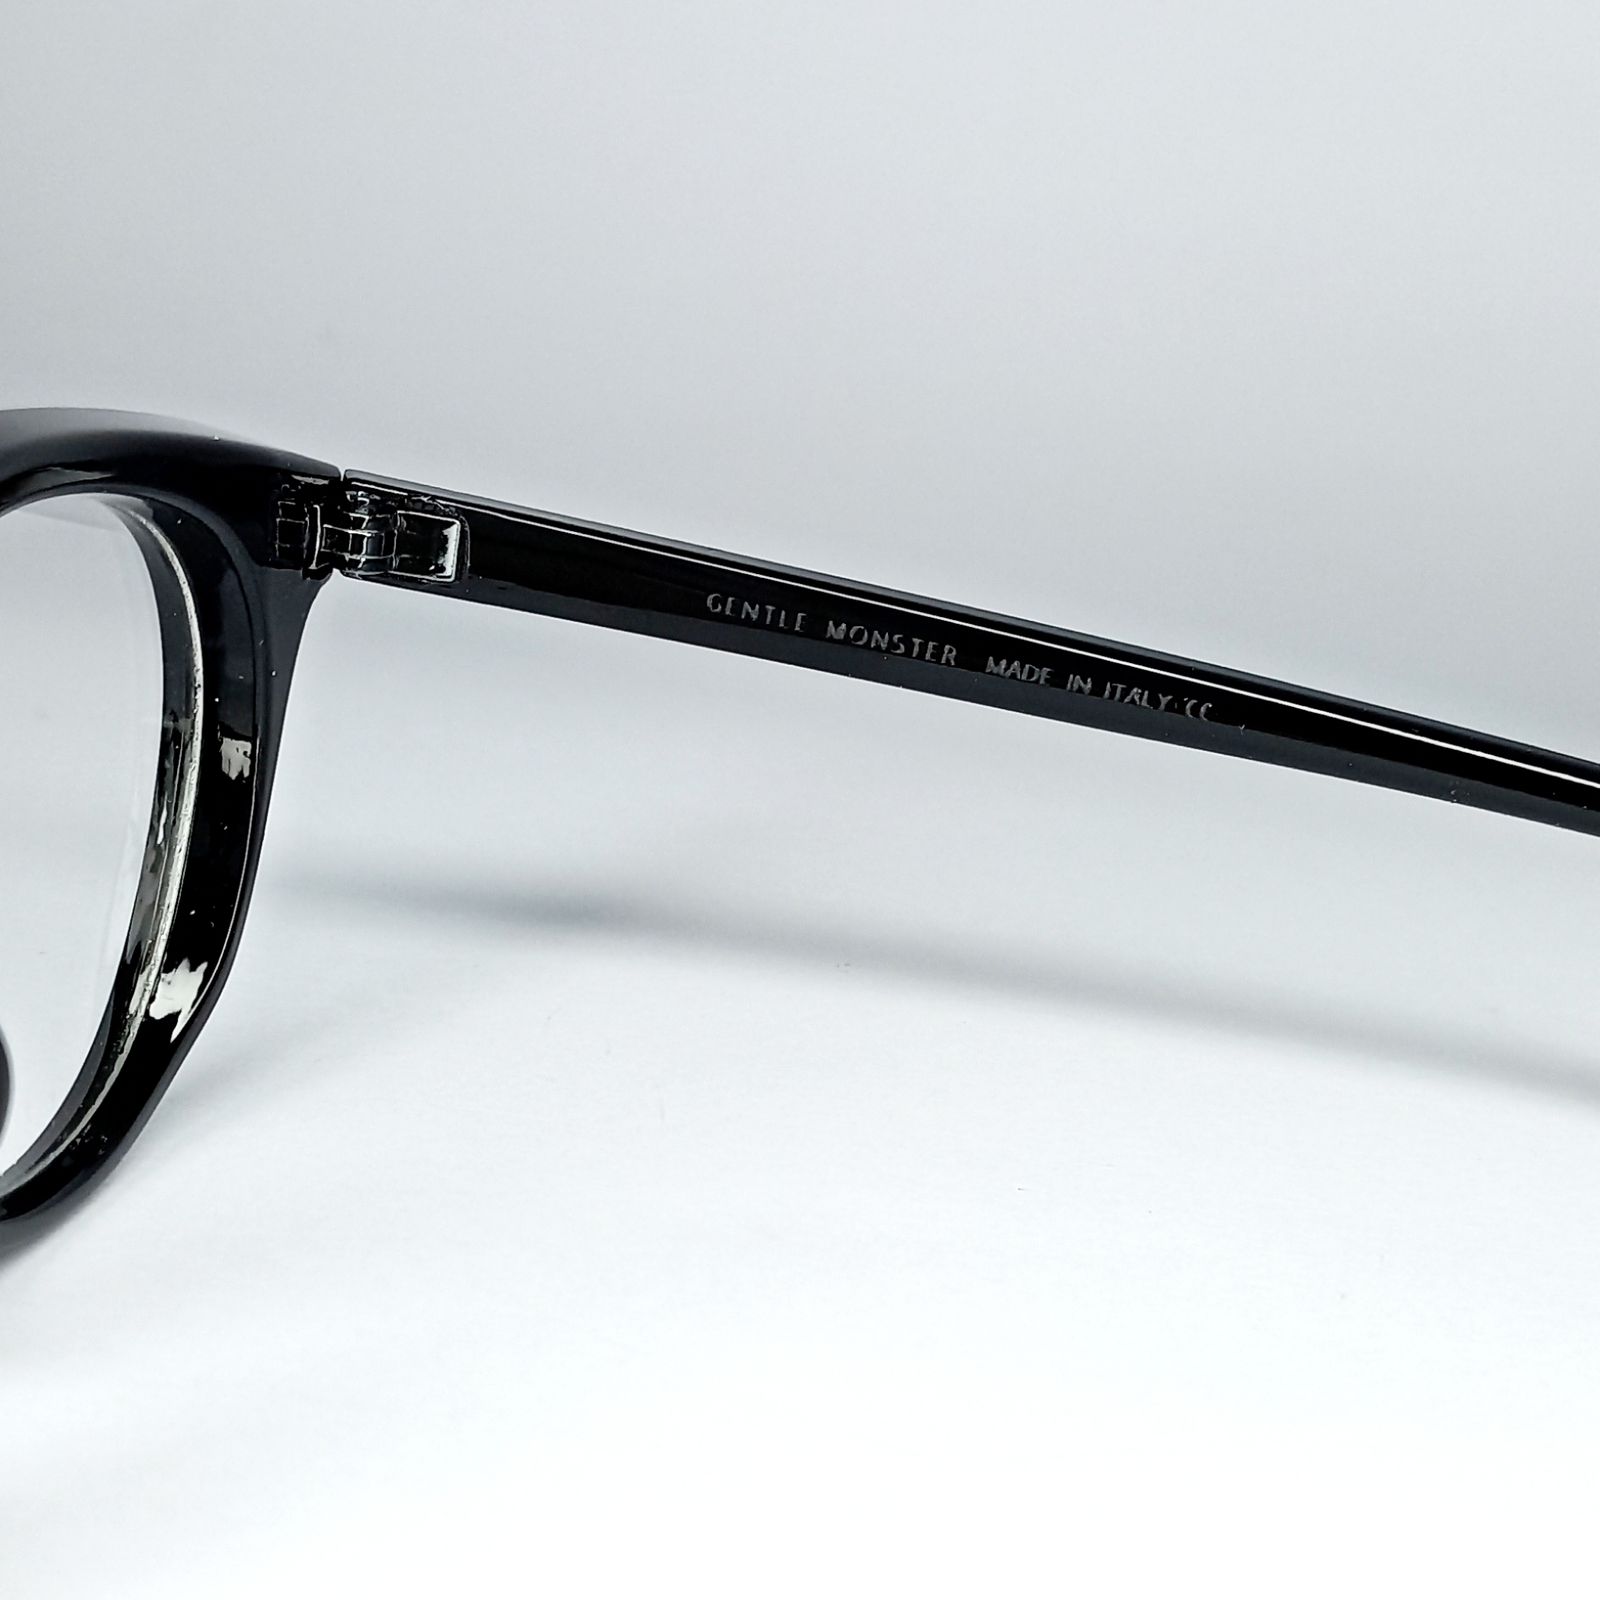 فریم عینک طبی جنتل مانستر مدل Hds9 -  - 3